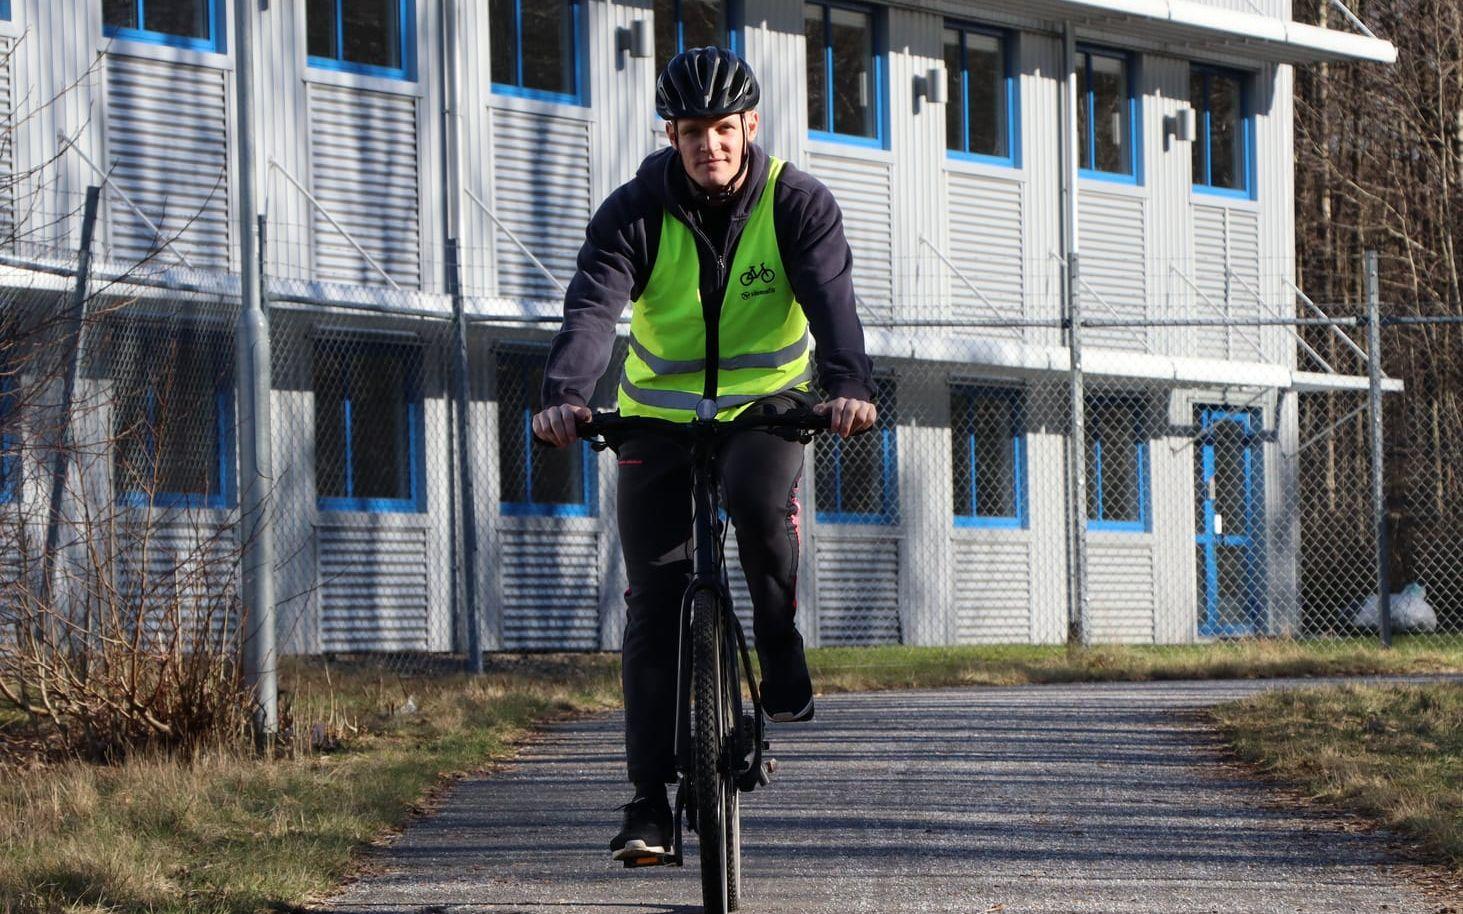 Jesper Skog hörde talas om projektet Vintercyklist genom en arbetskamrat. Då hade han funderat ett tag på att börja cykla även på vintern. Vinsterna har varit många. Han får extra motion och så är det bra för miljön, tycker han.